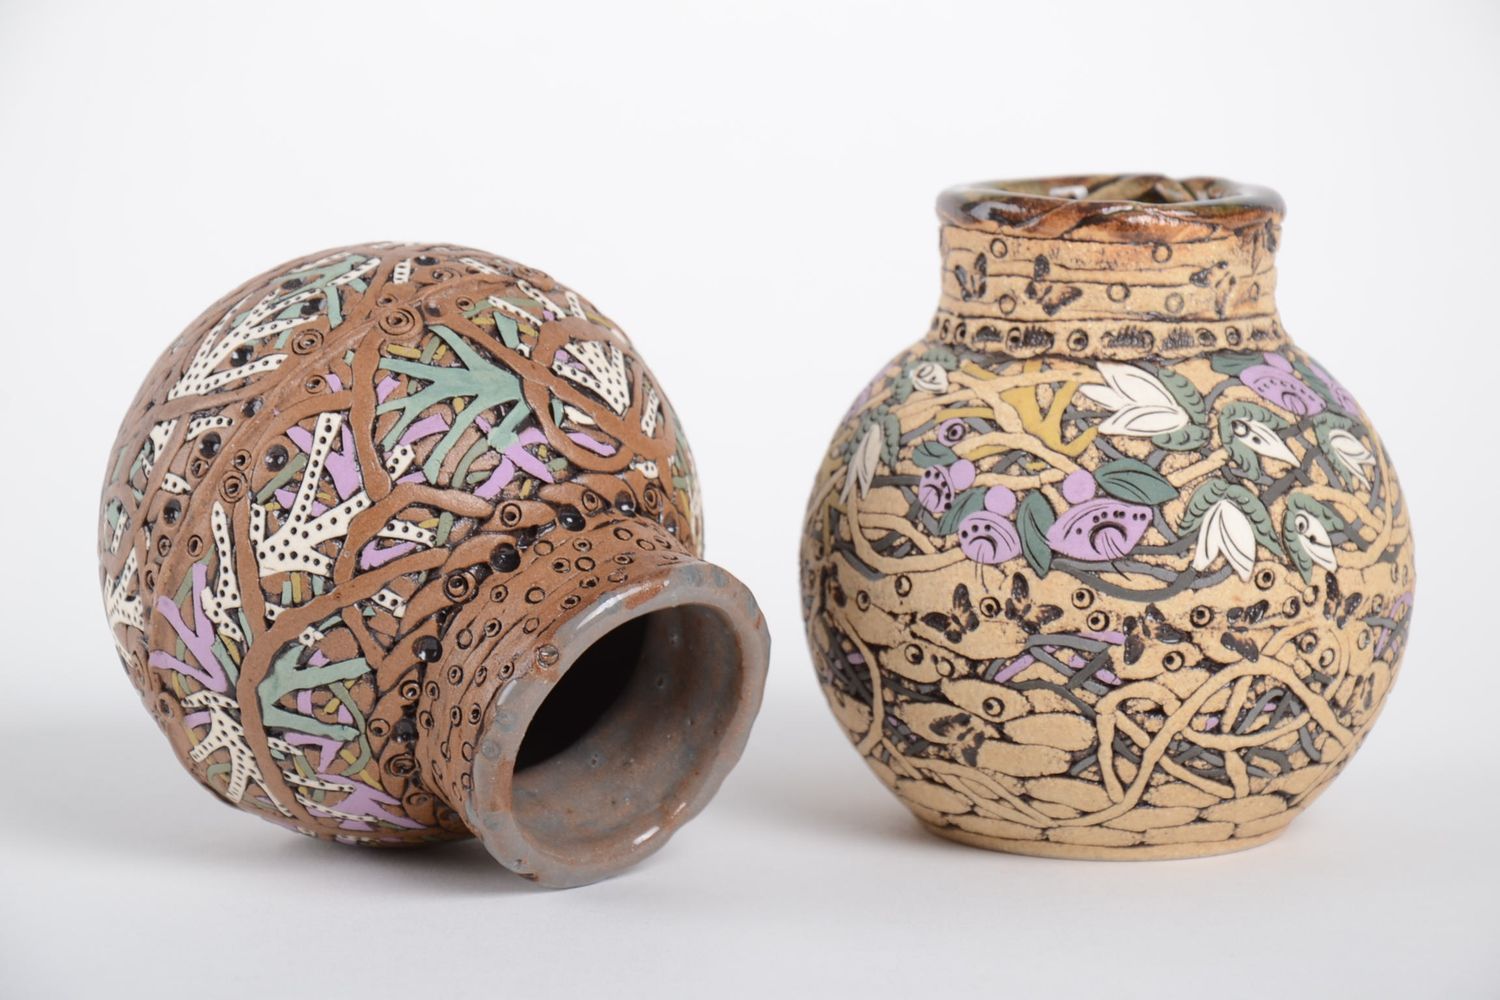  Керамические вазы для цветов ручная работа глиняные вазы 2 шт .